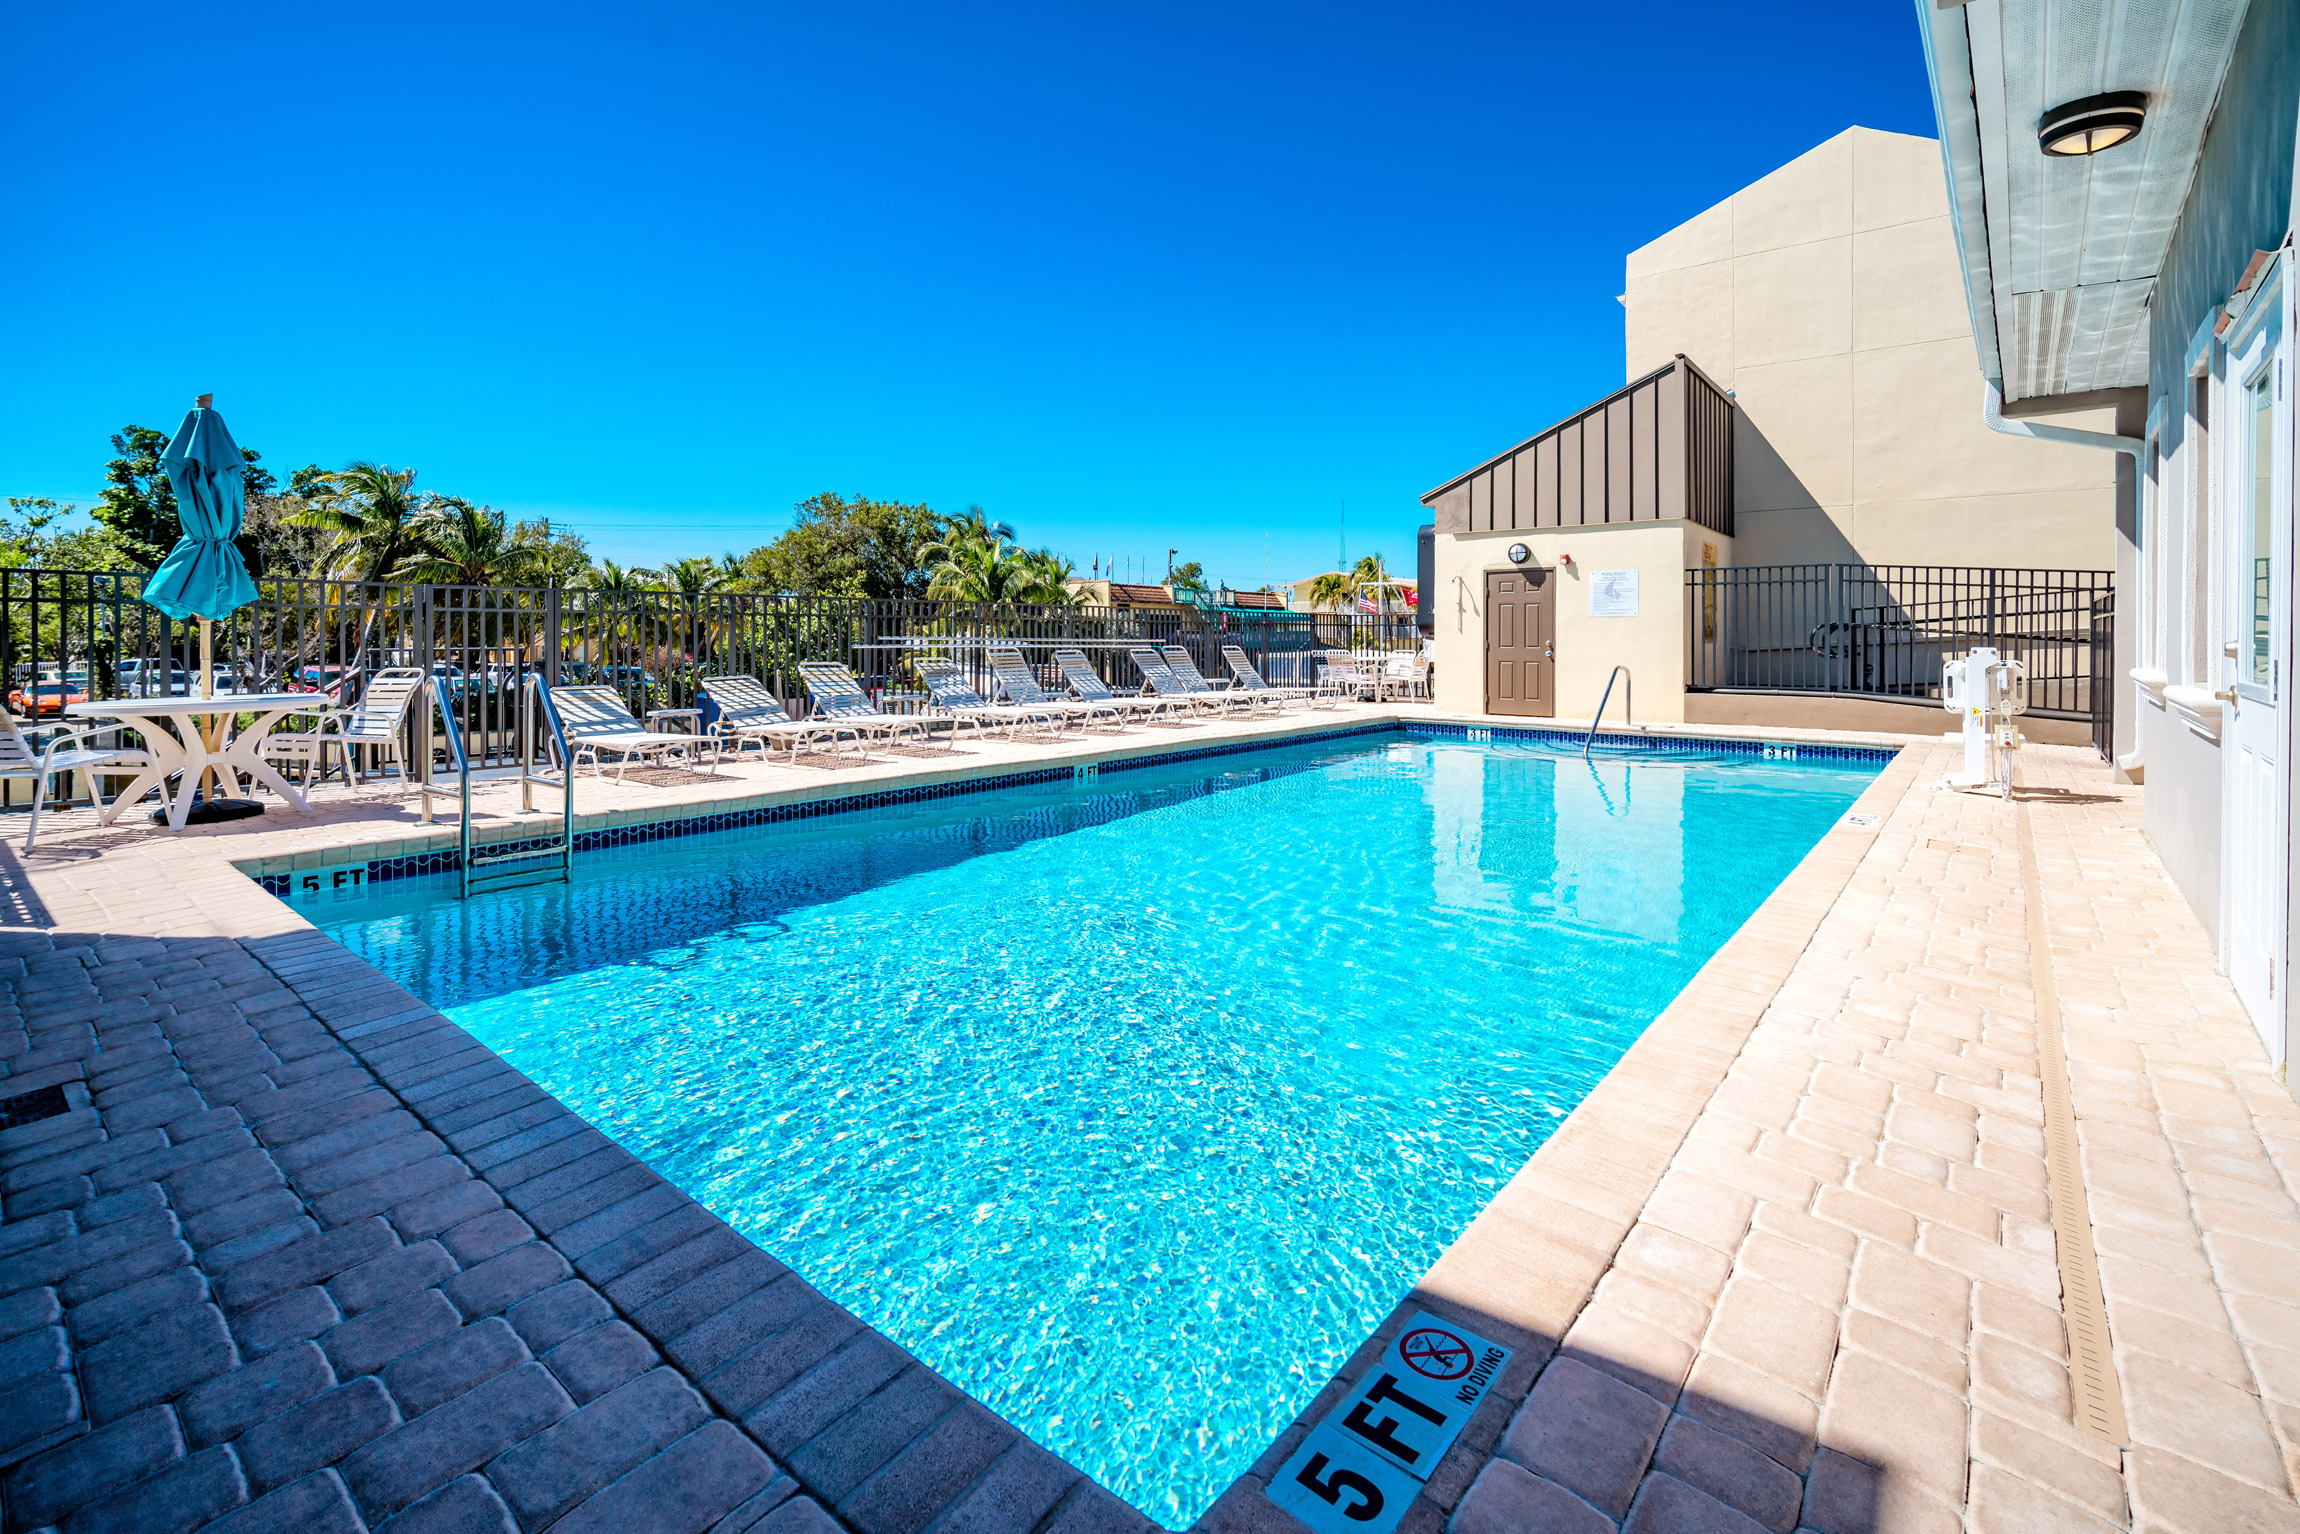 Photo of Waterside Suites & Marina, Key Largo, FL